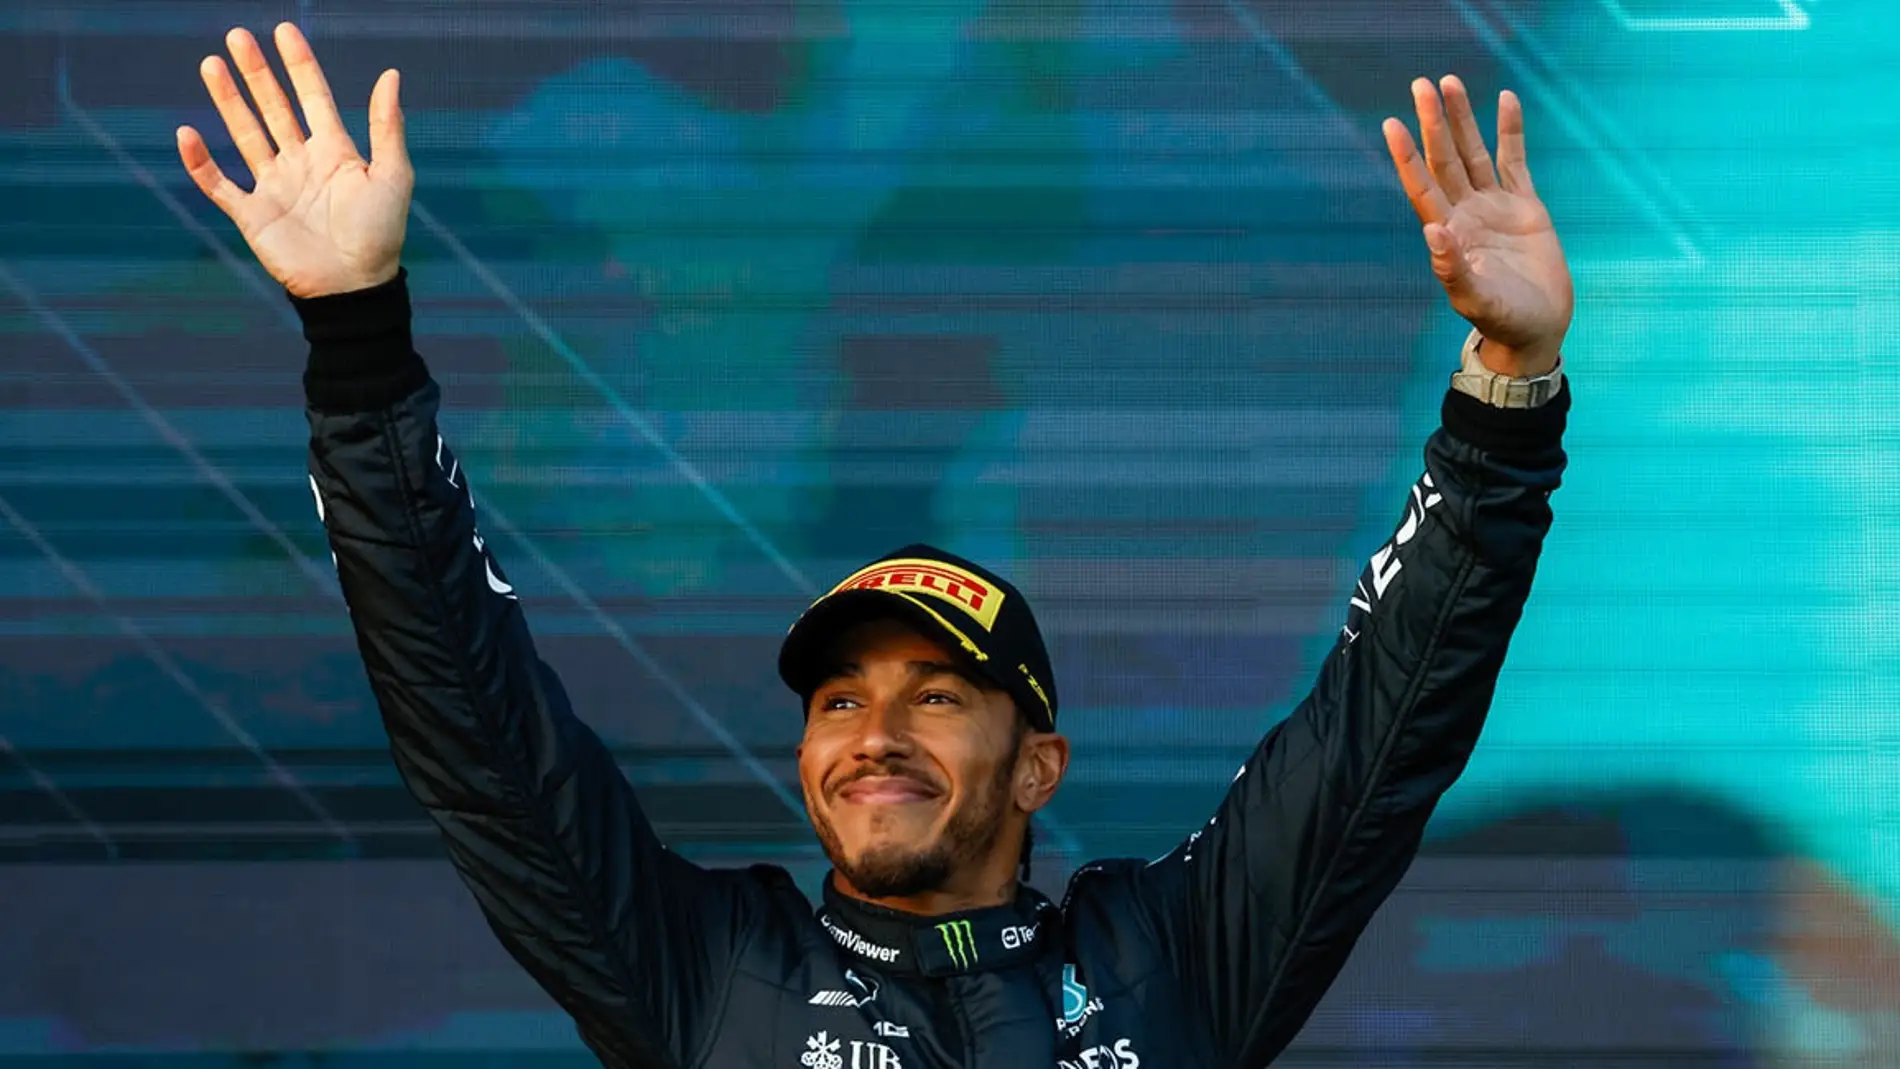 Todos los detalles de la inmediata renovación de Lewis Hamilton 